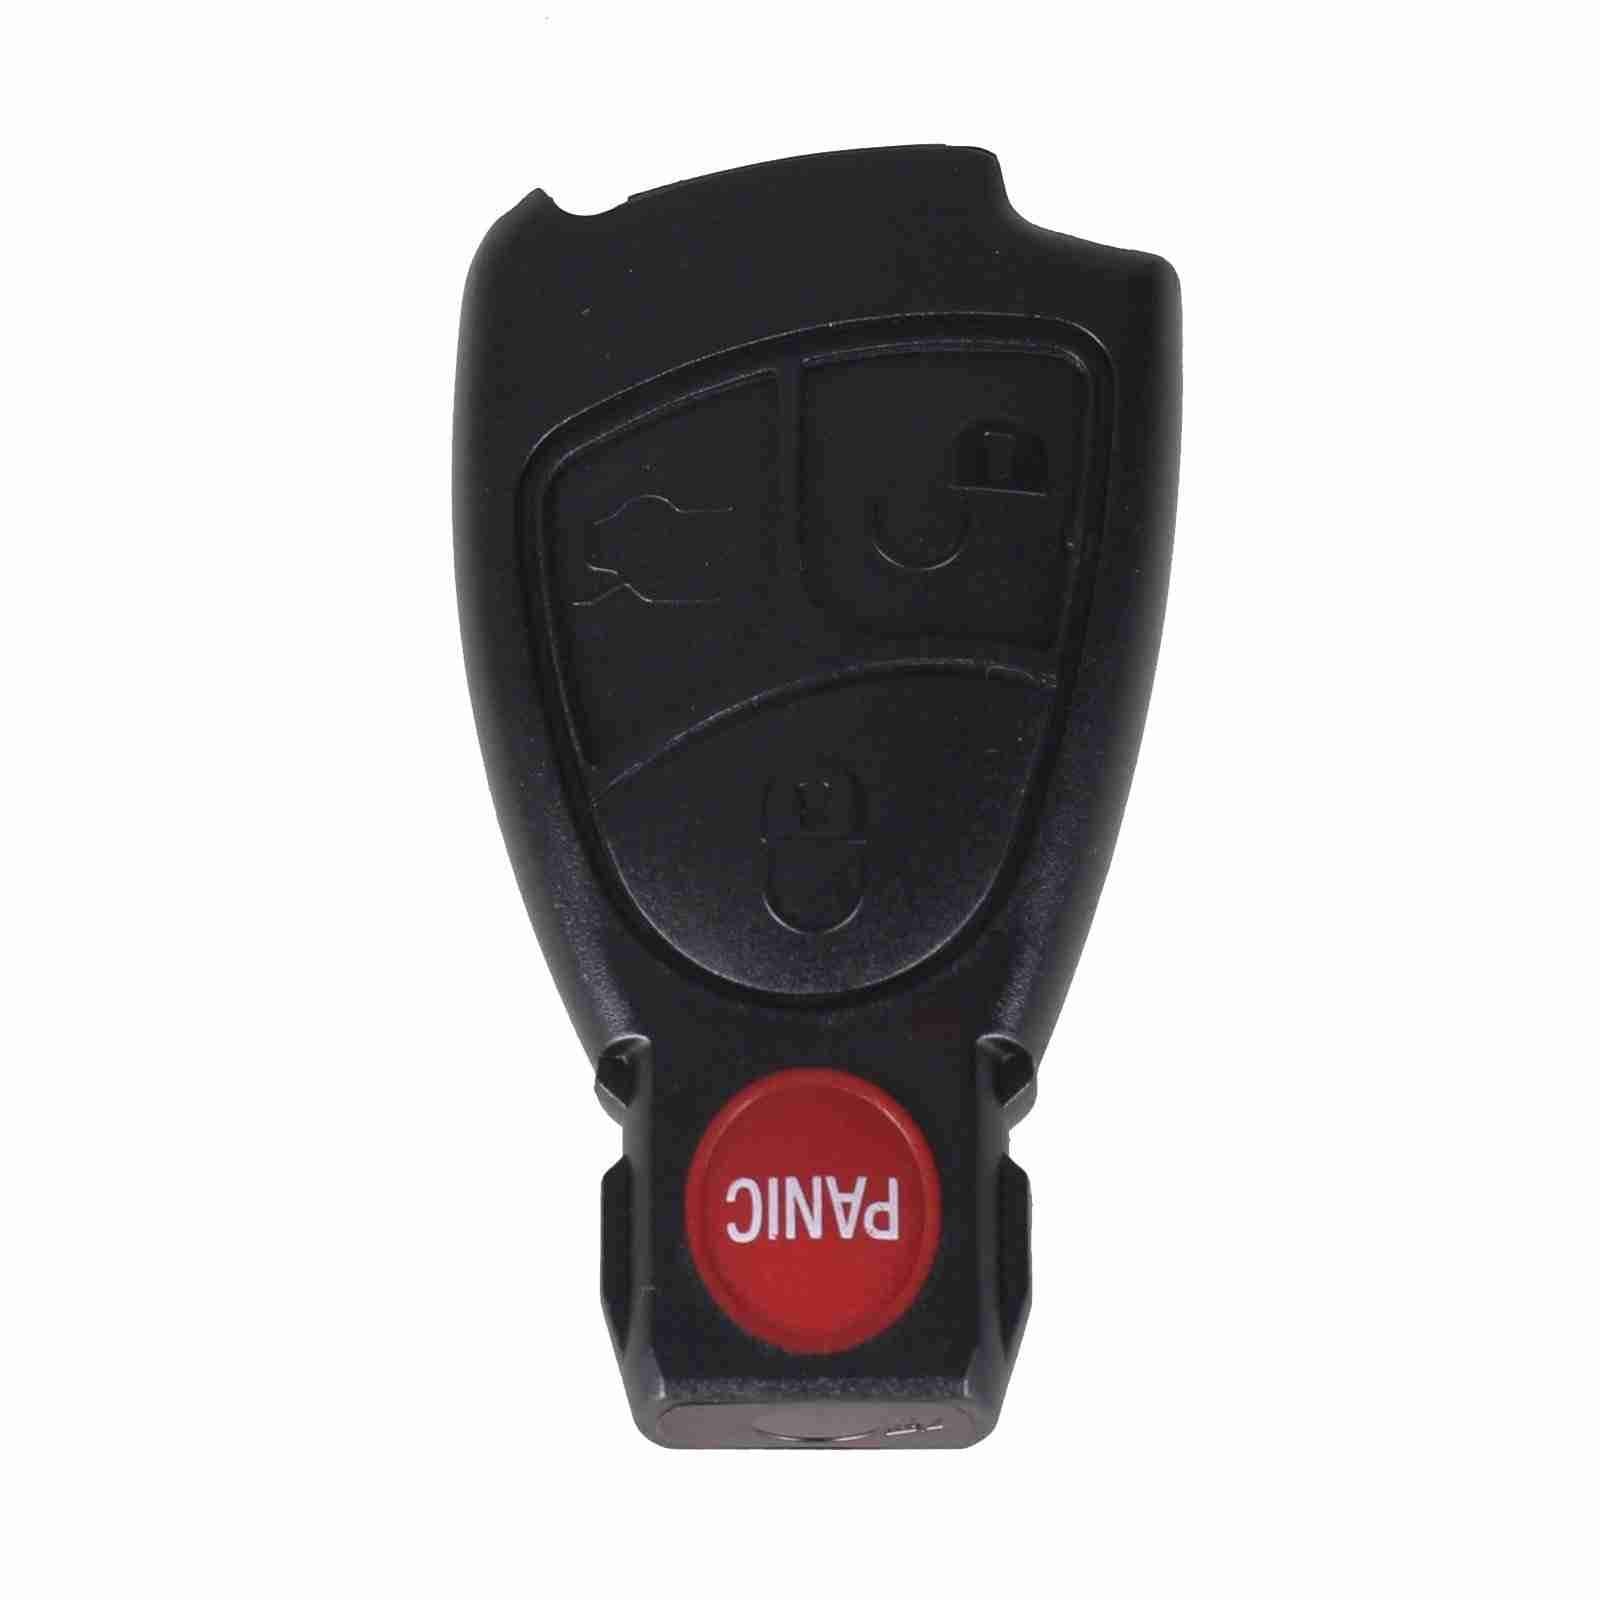 Fekete színű, 3 gombos Mercedes kulcsház piros színű PANIC gombbal.